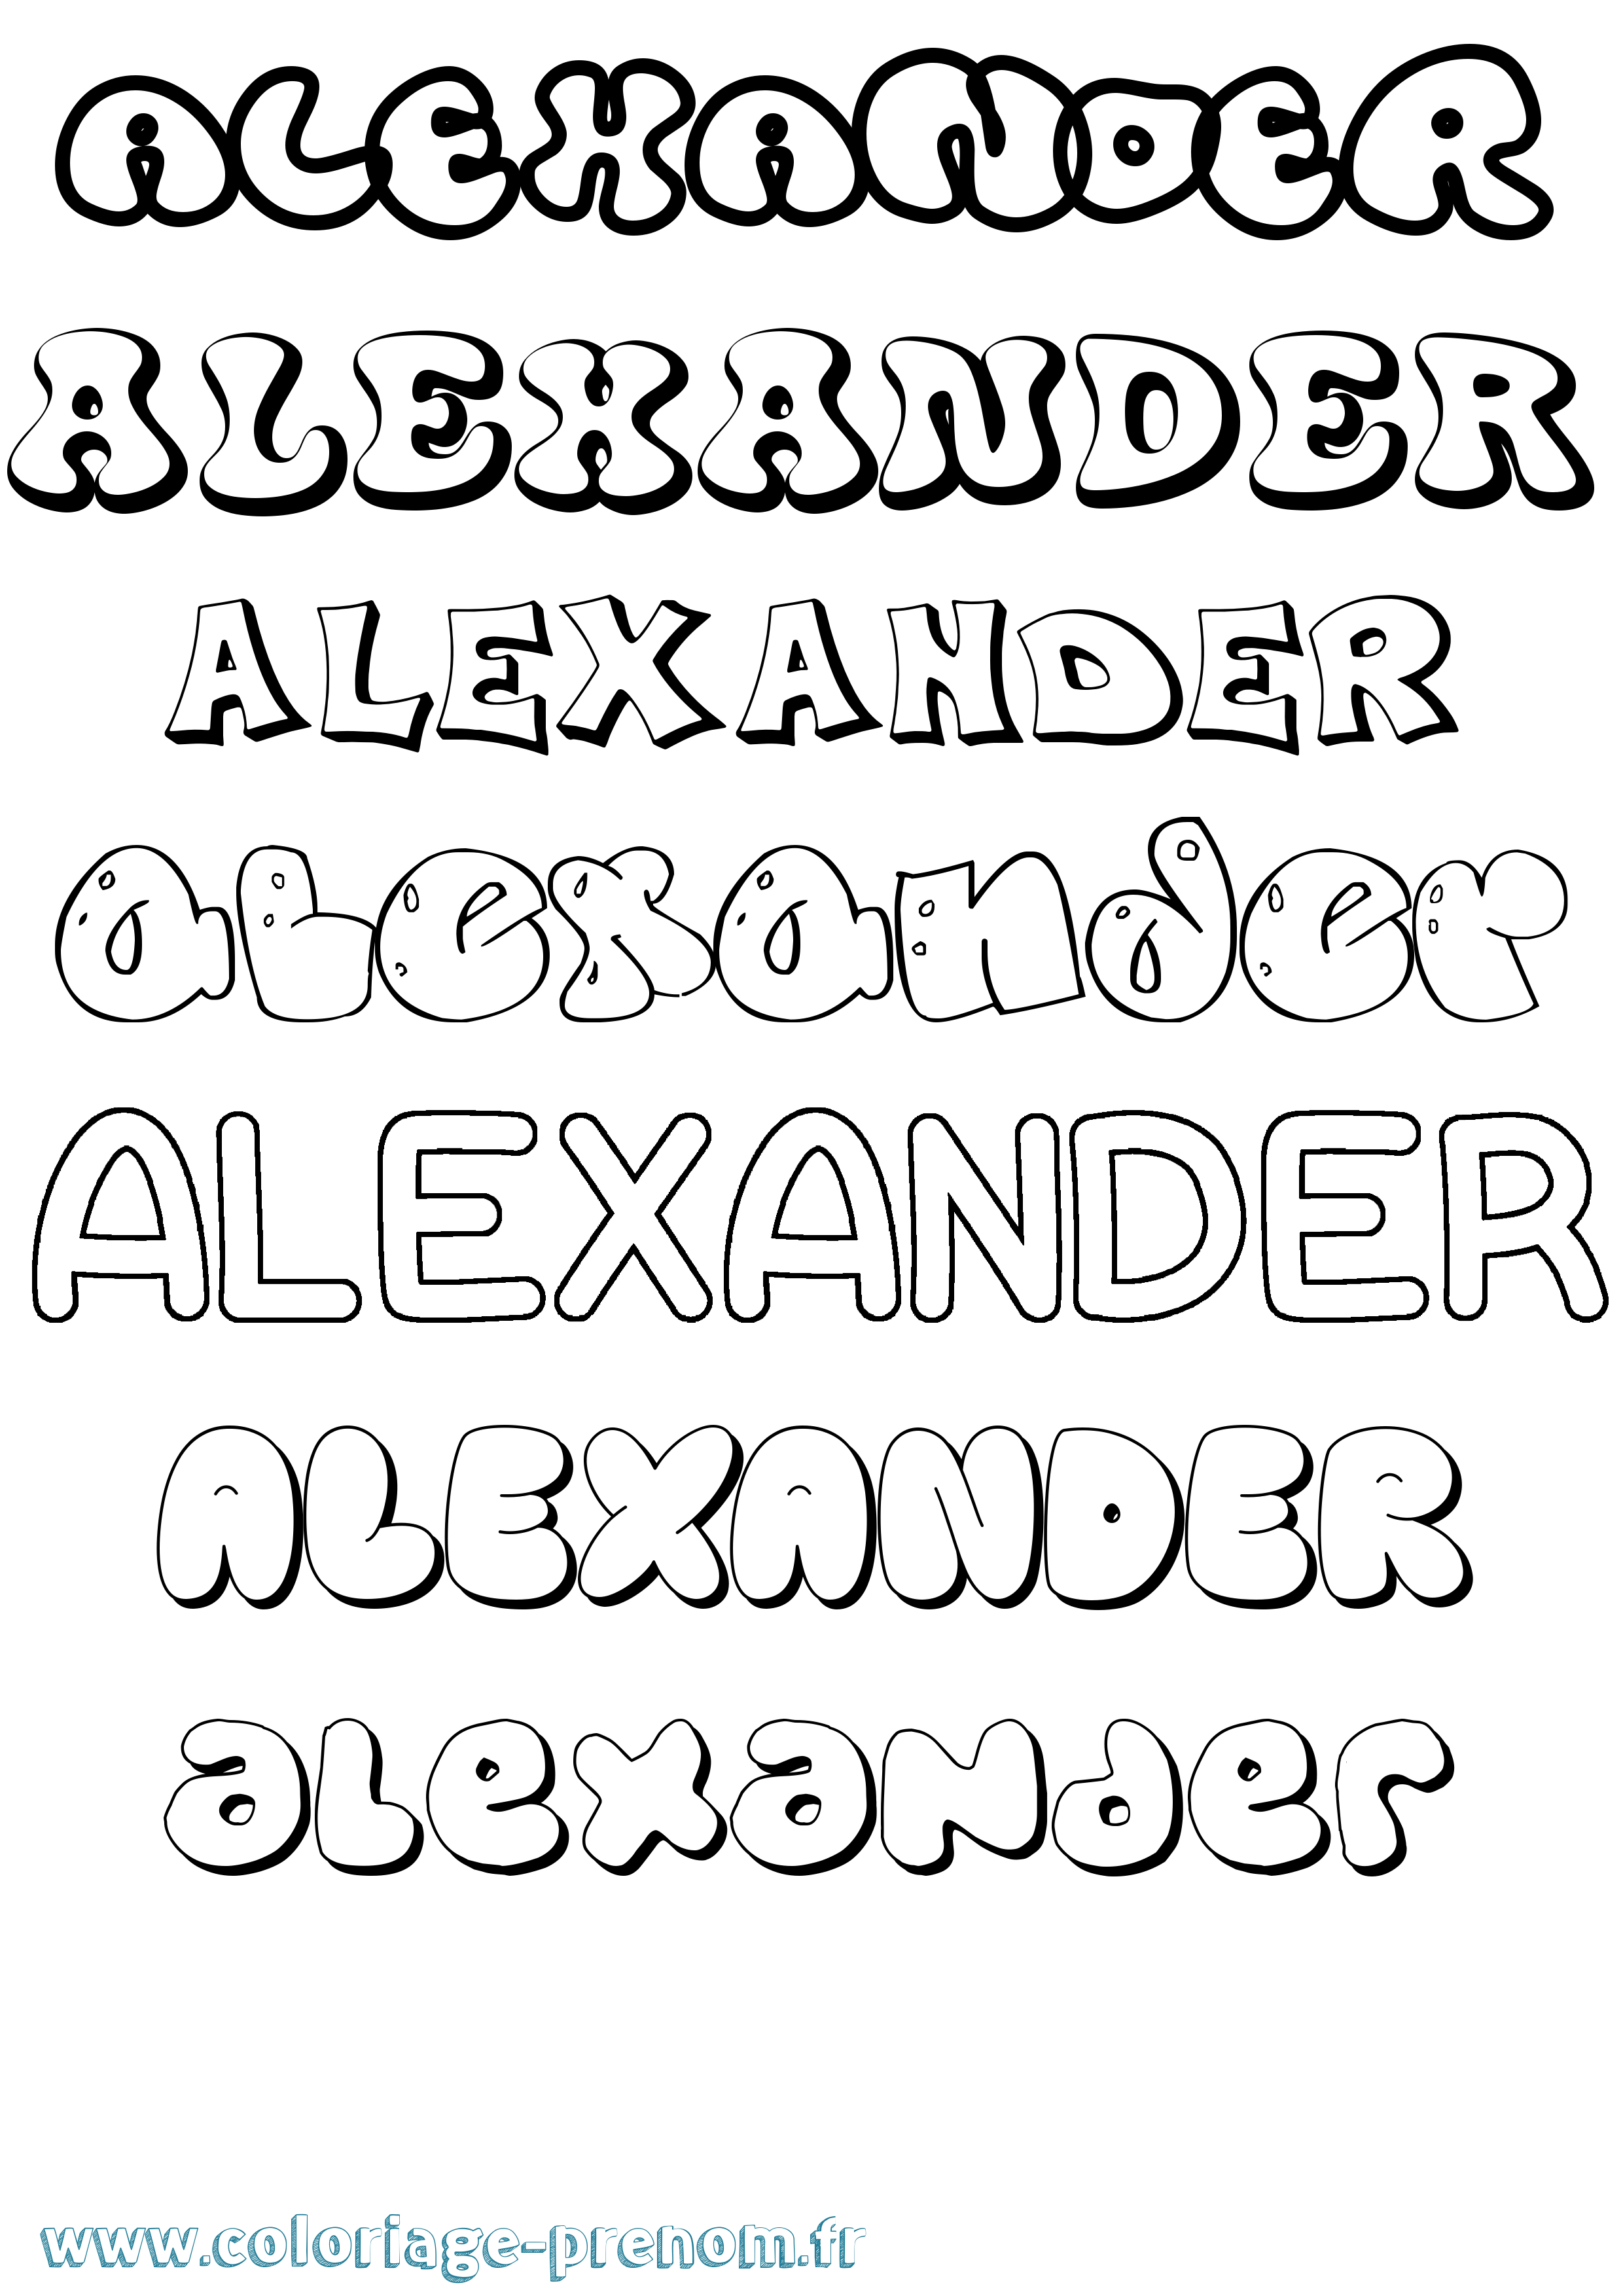 Coloriage prénom Alexander Bubble